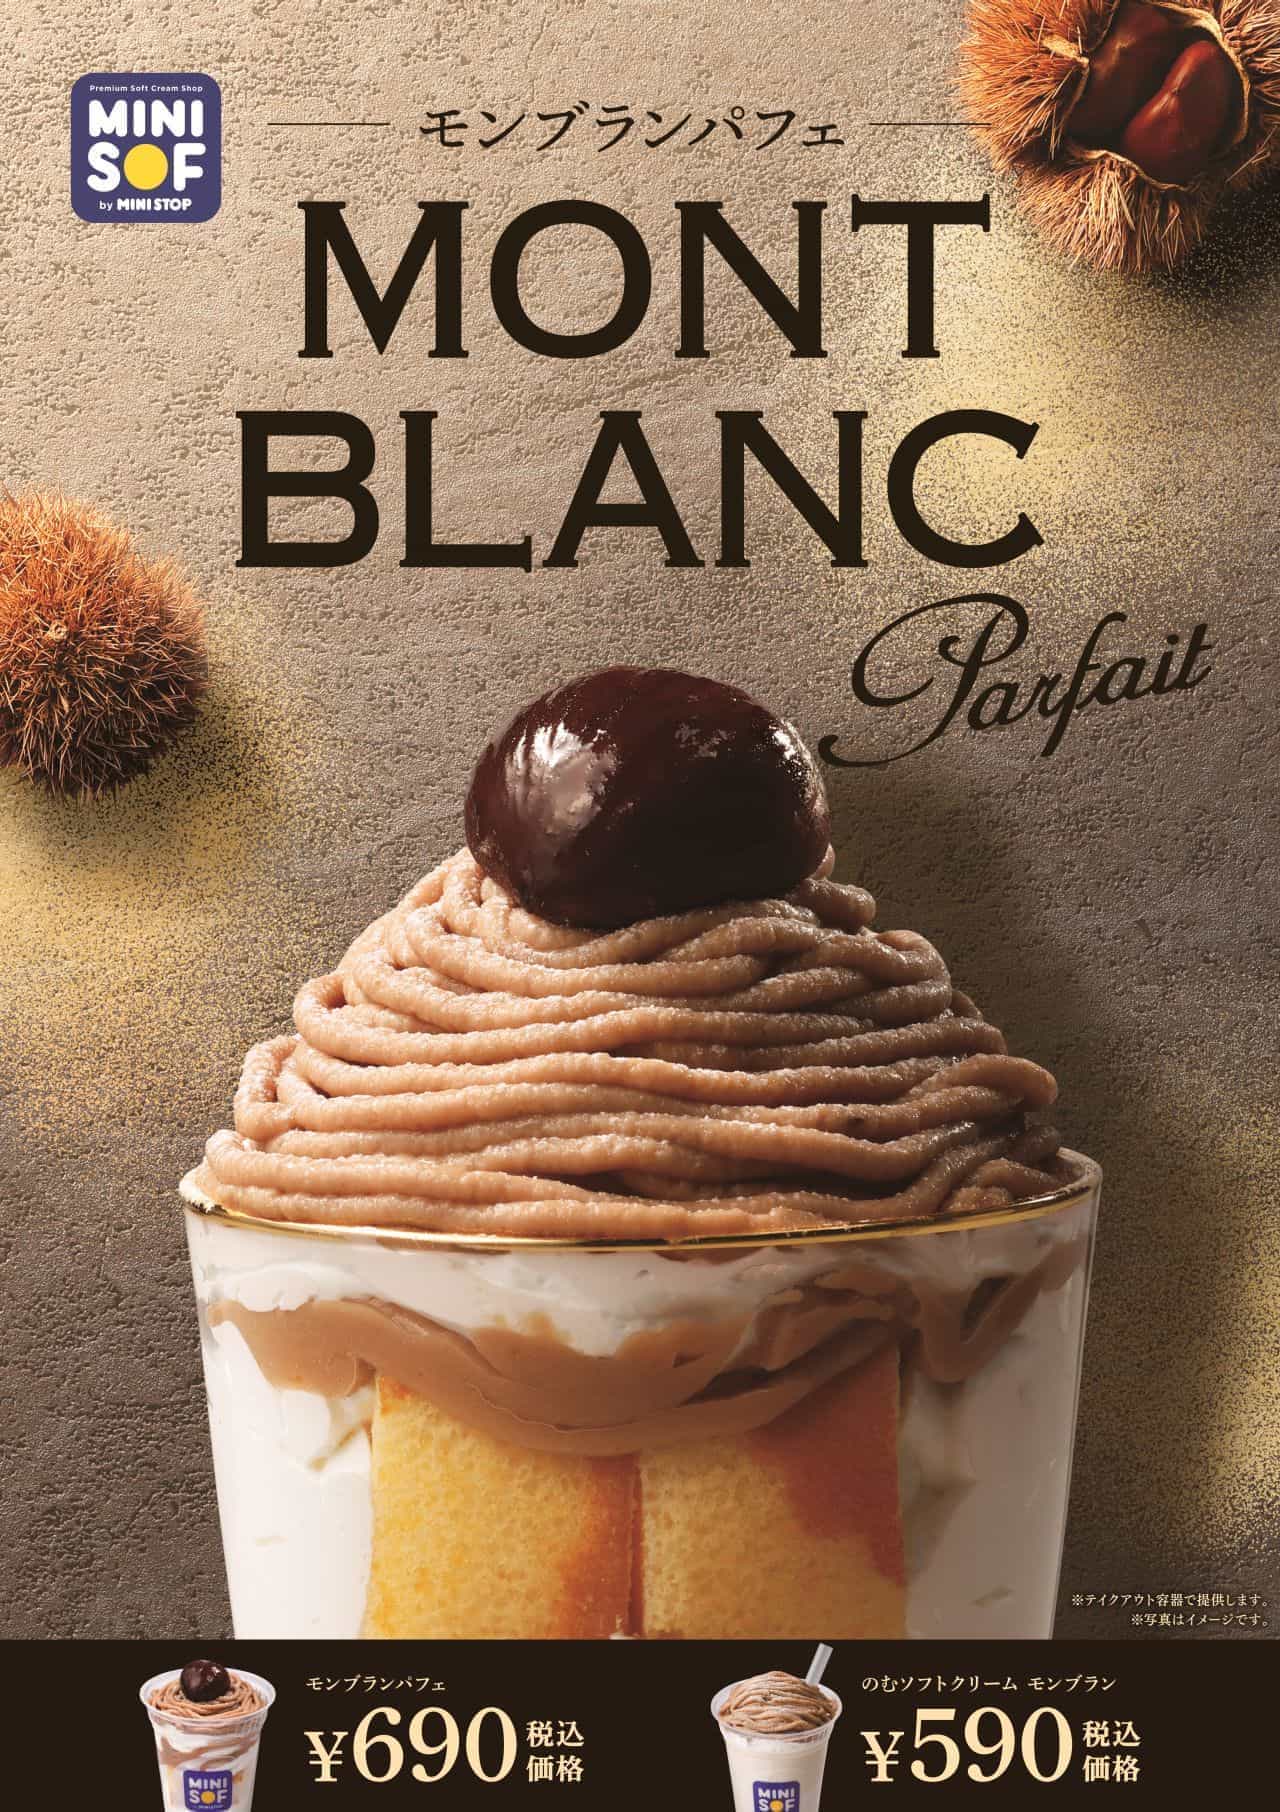 Mini sof "Mont Blanc Parfait"